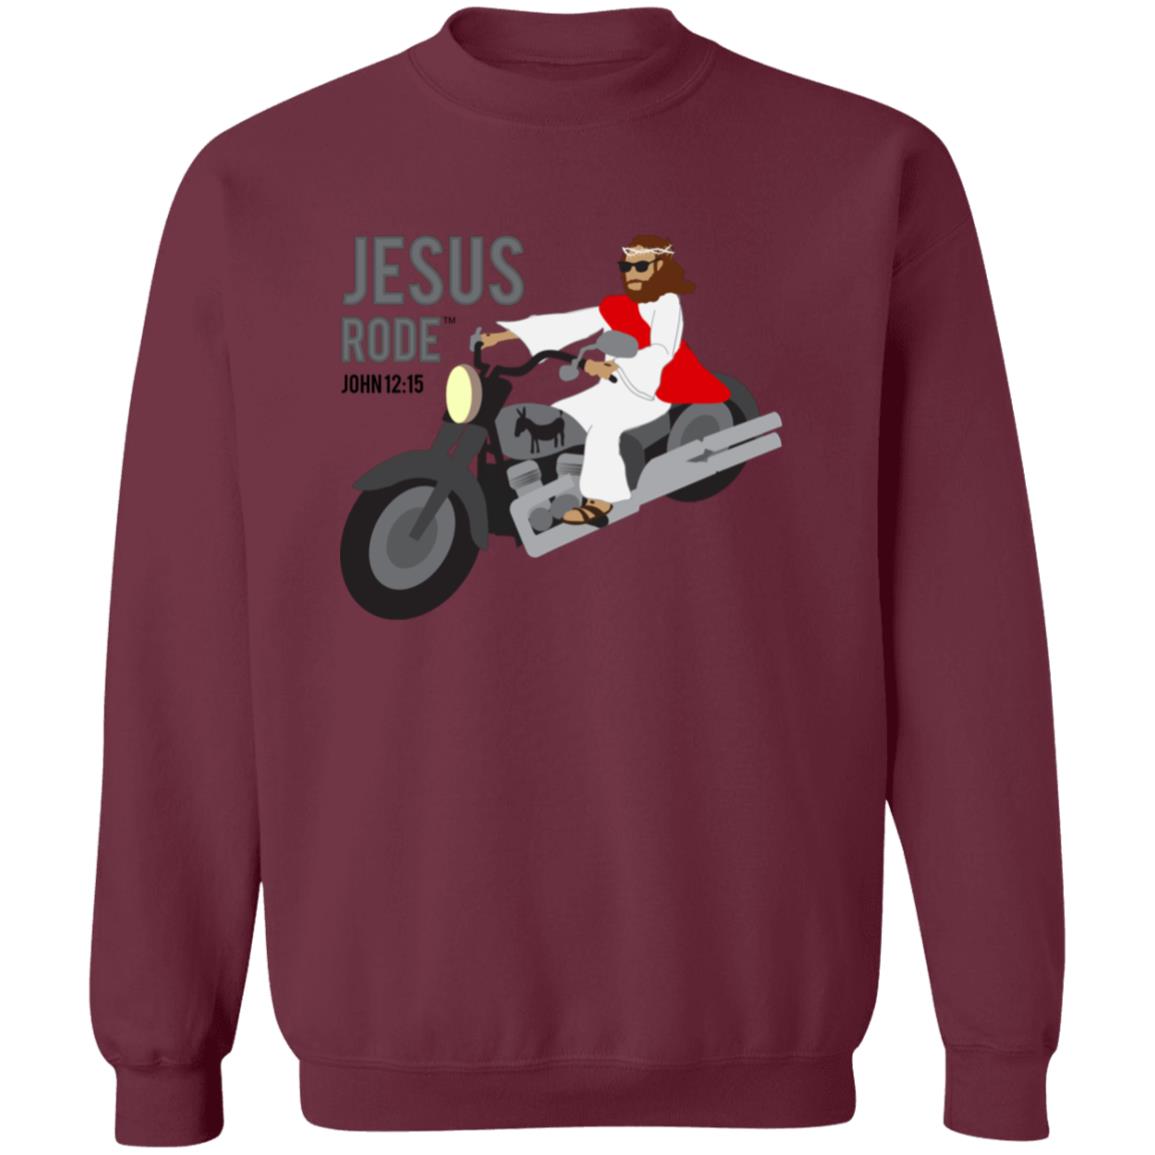 Cruis'n Jesus Men/Women Unisex Crewneck Sweatshirt